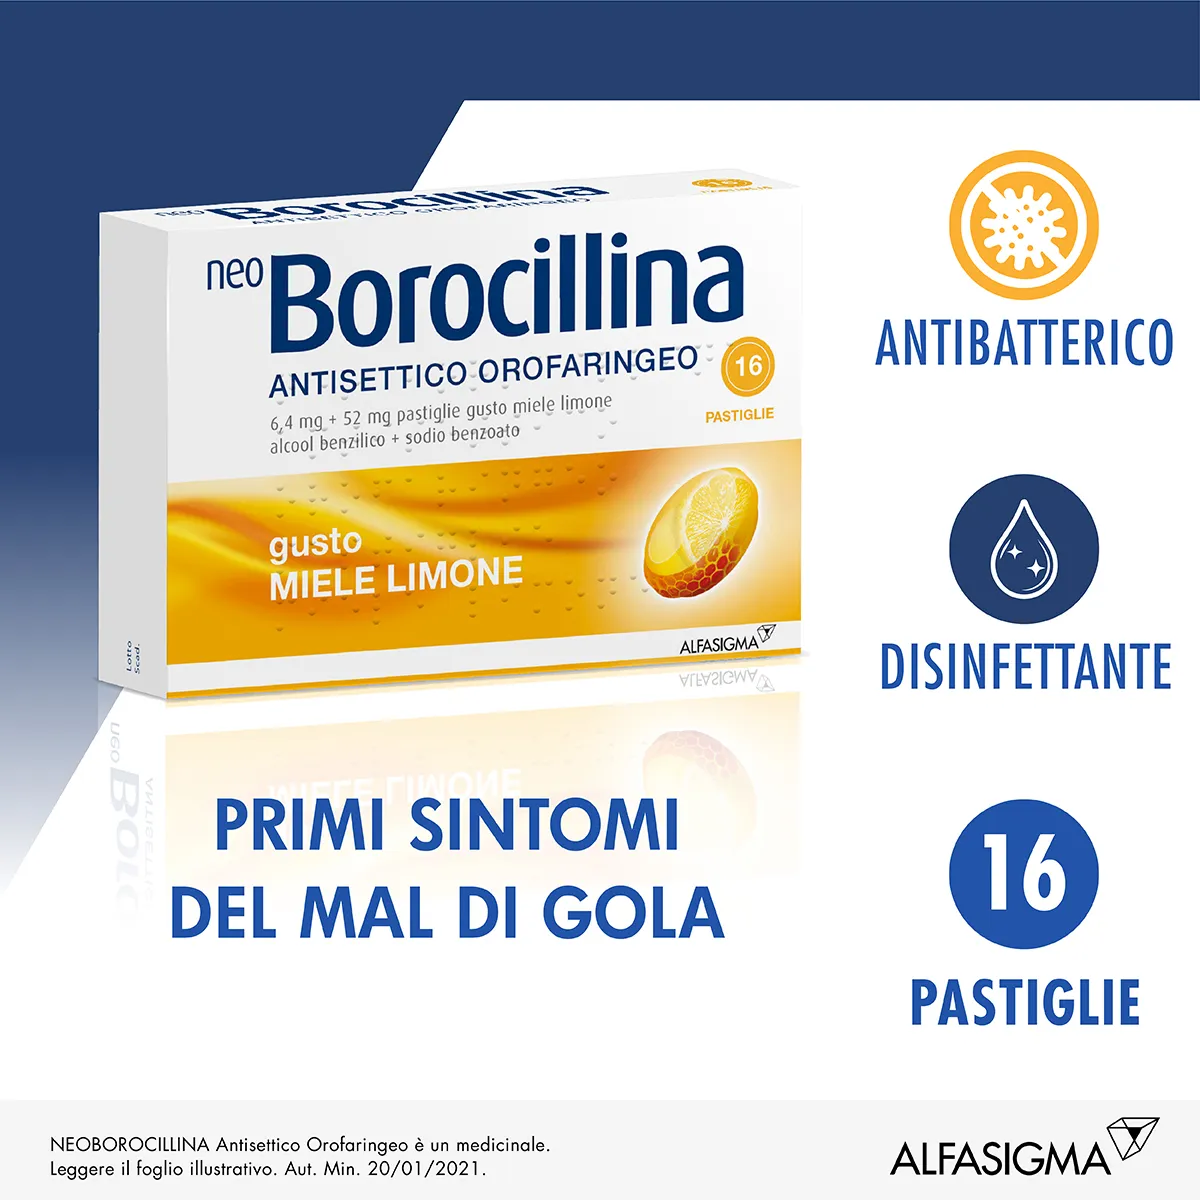 Neo Borocillina Antisettico Orofaringeo 6,4mg + 52mg Limone e Miele 16 Pastiglie